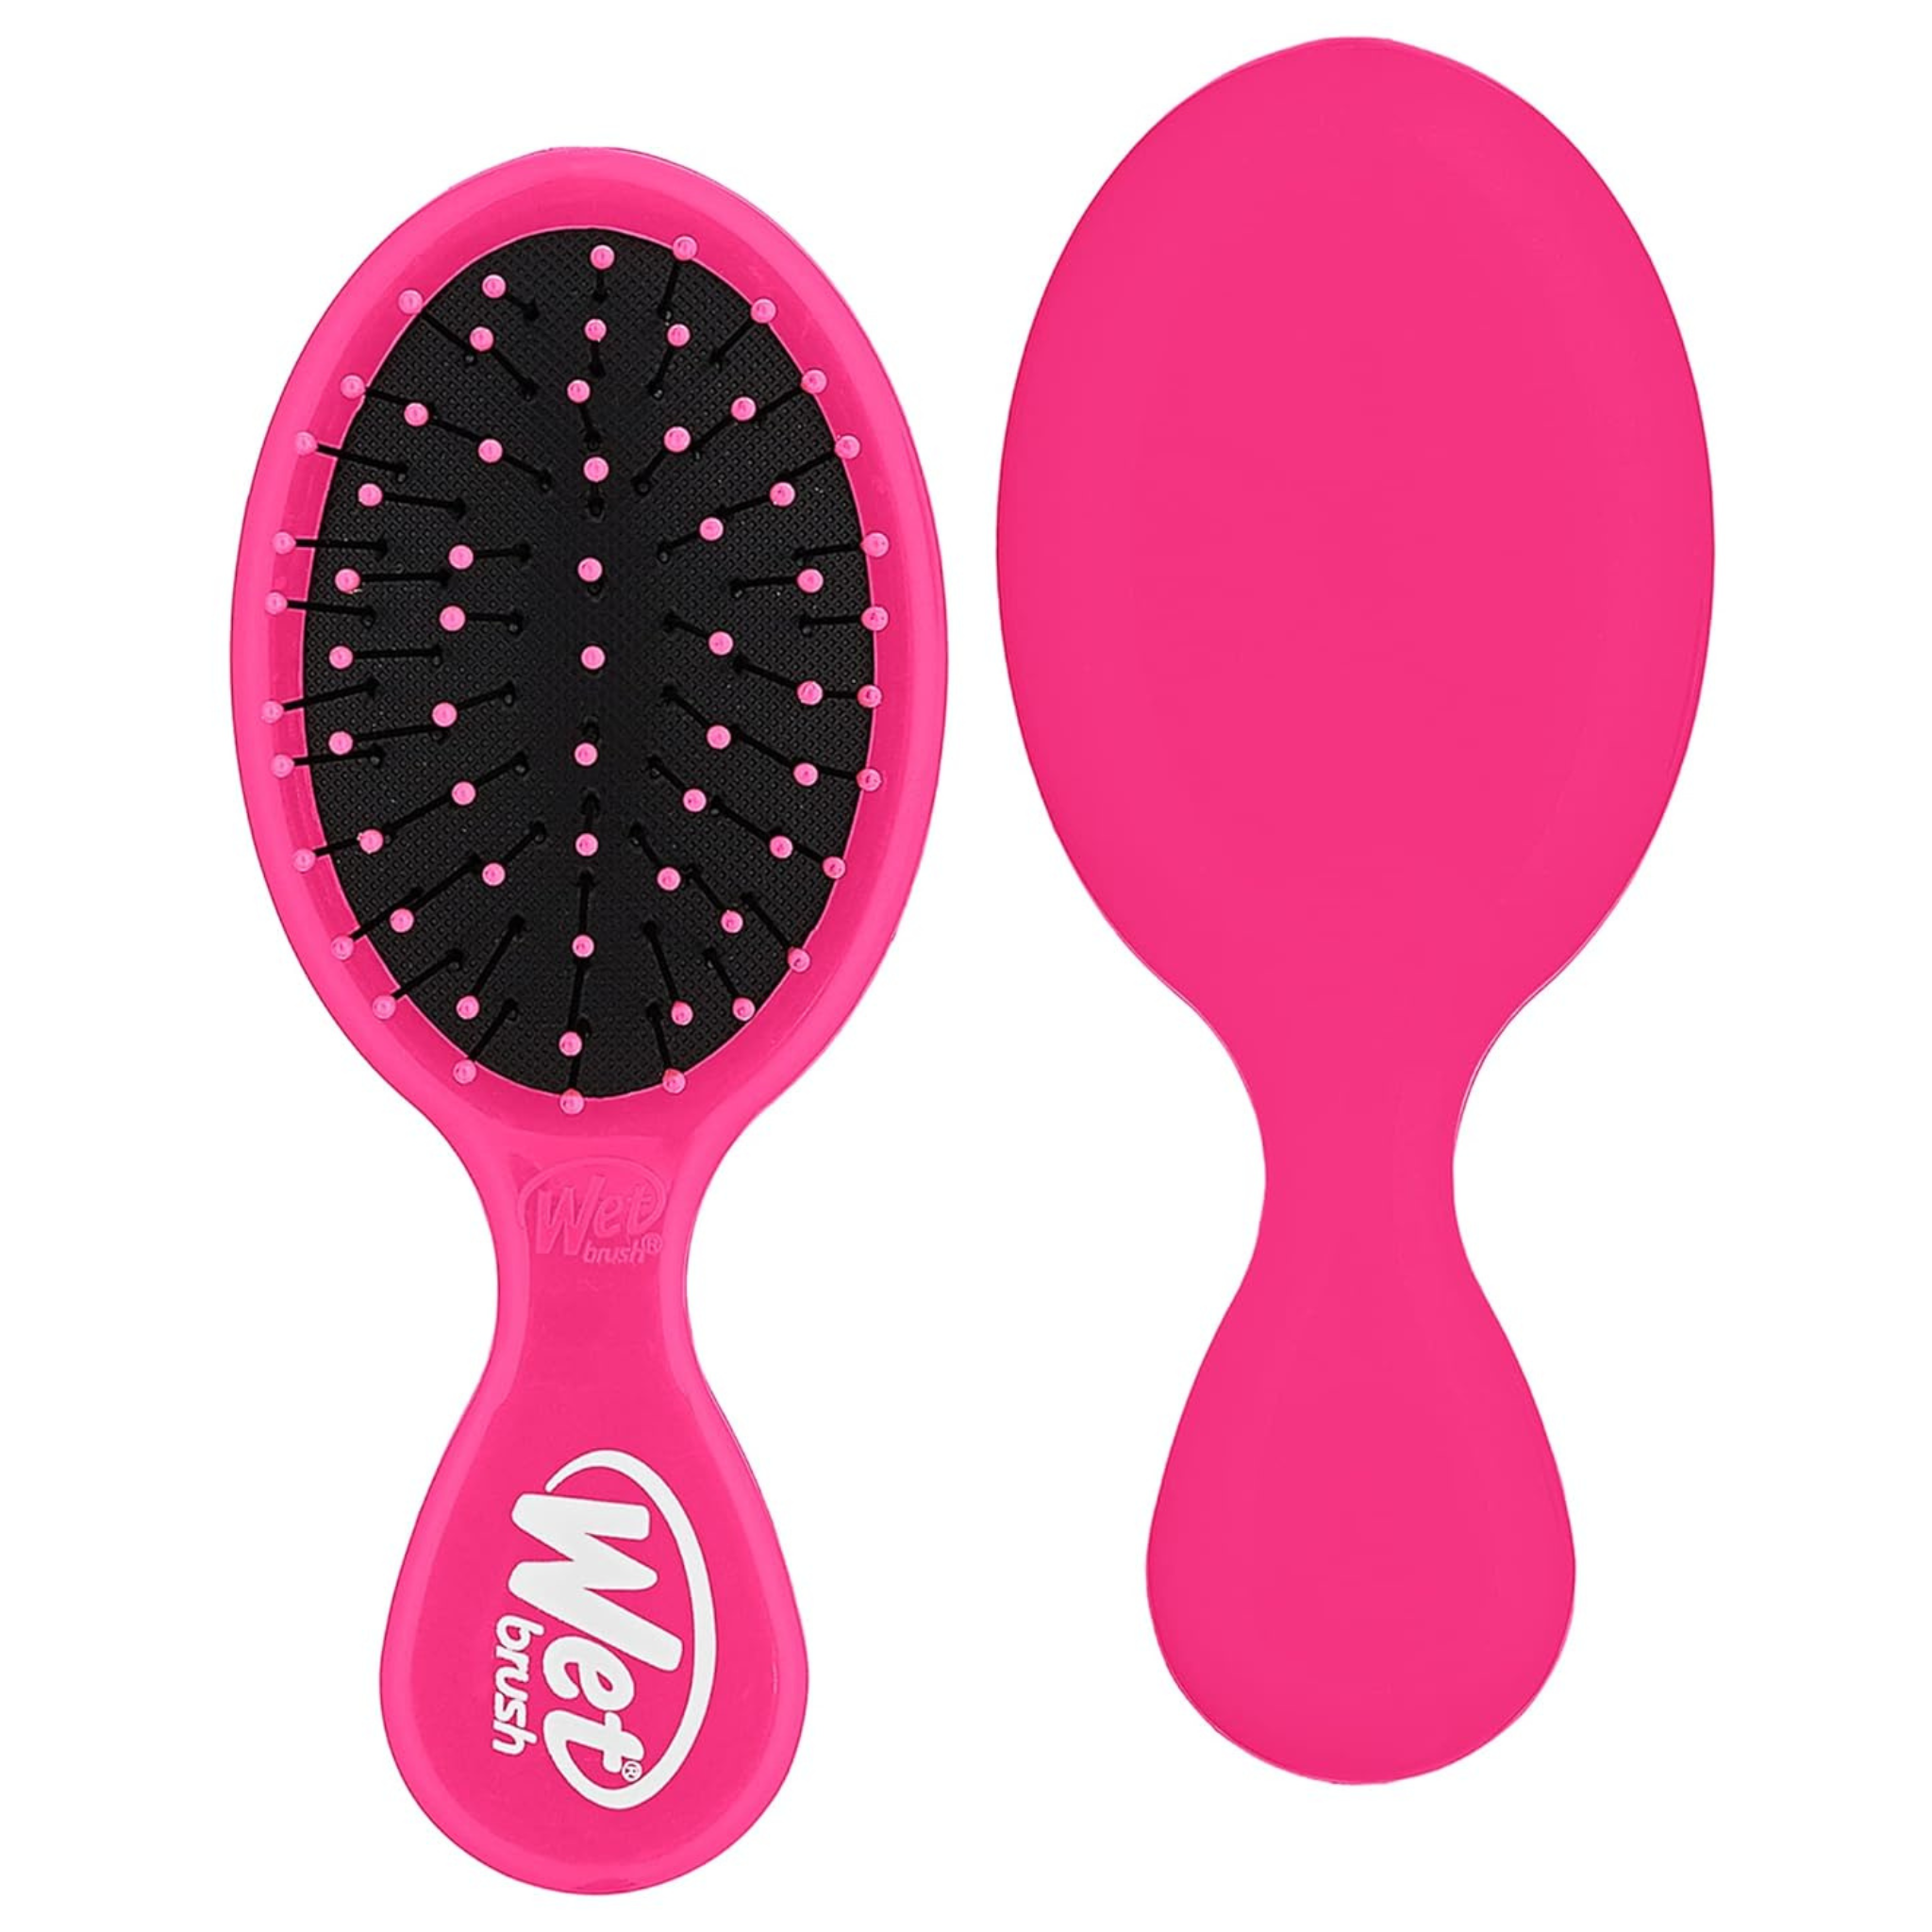 Wet Brush Mini Detangler Hair Brush, Pink (1-Pack)